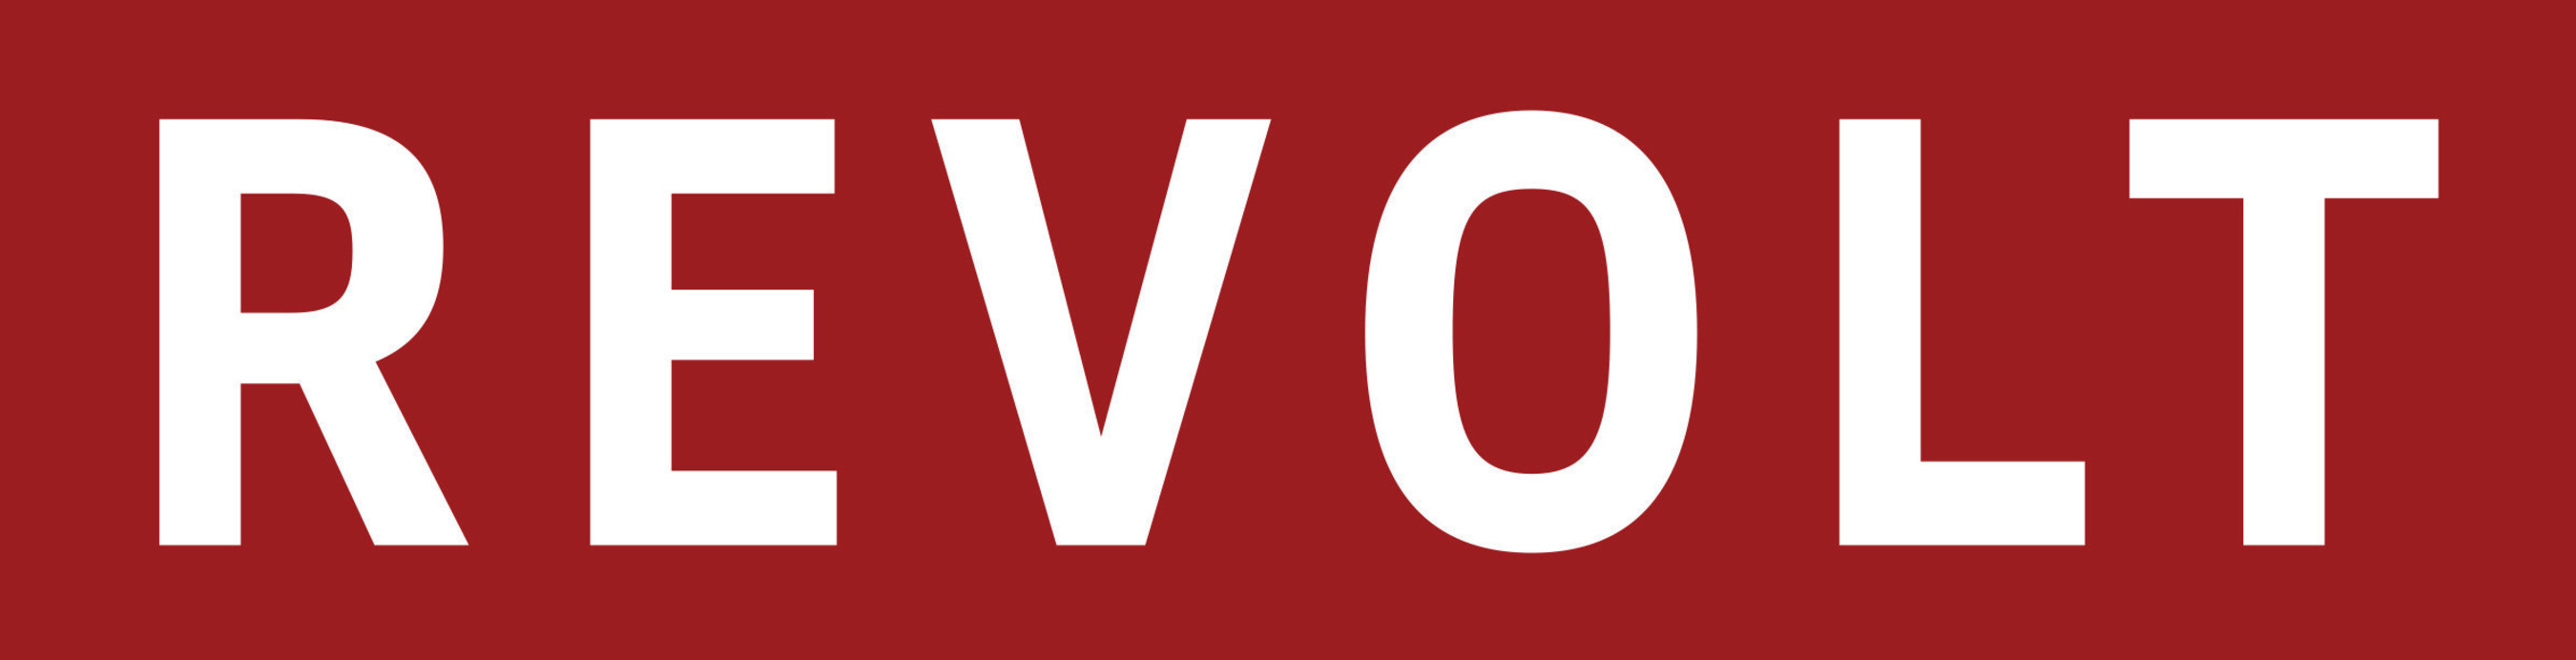 REVOLT MEDIA & TV Logo